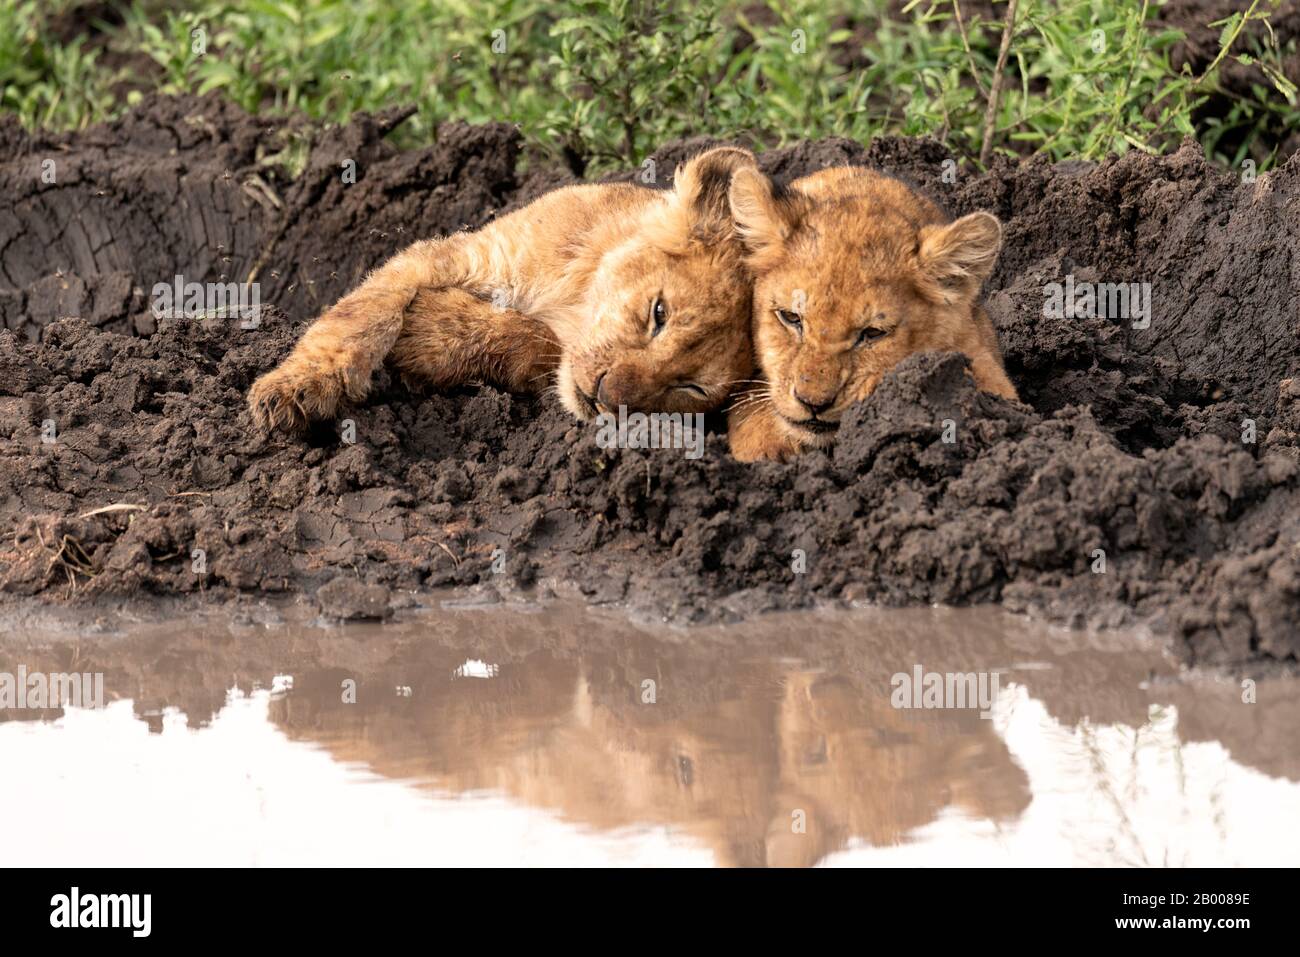 Adorabili cuccioli di Leone coccolarsi con il riflesso nella pozza Foto Stock